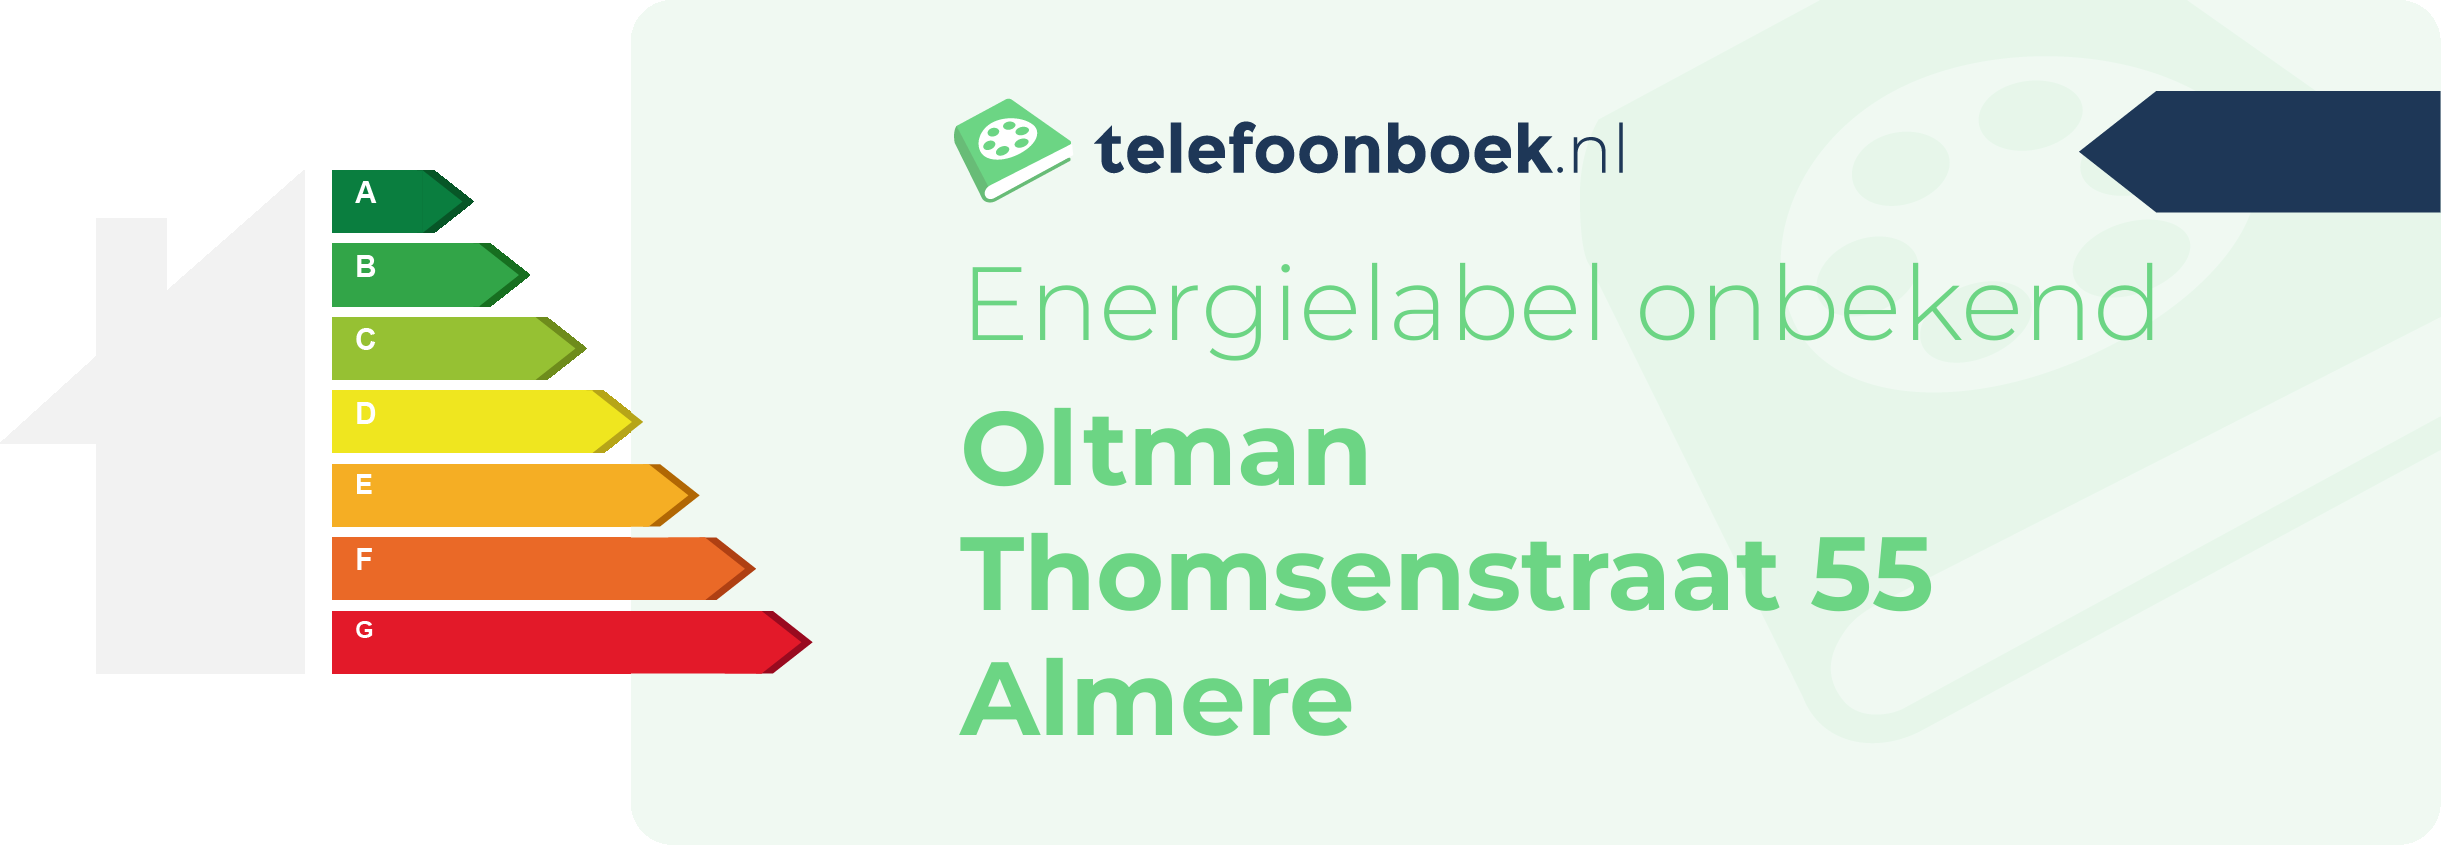 Energielabel Oltman Thomsenstraat 55 Almere